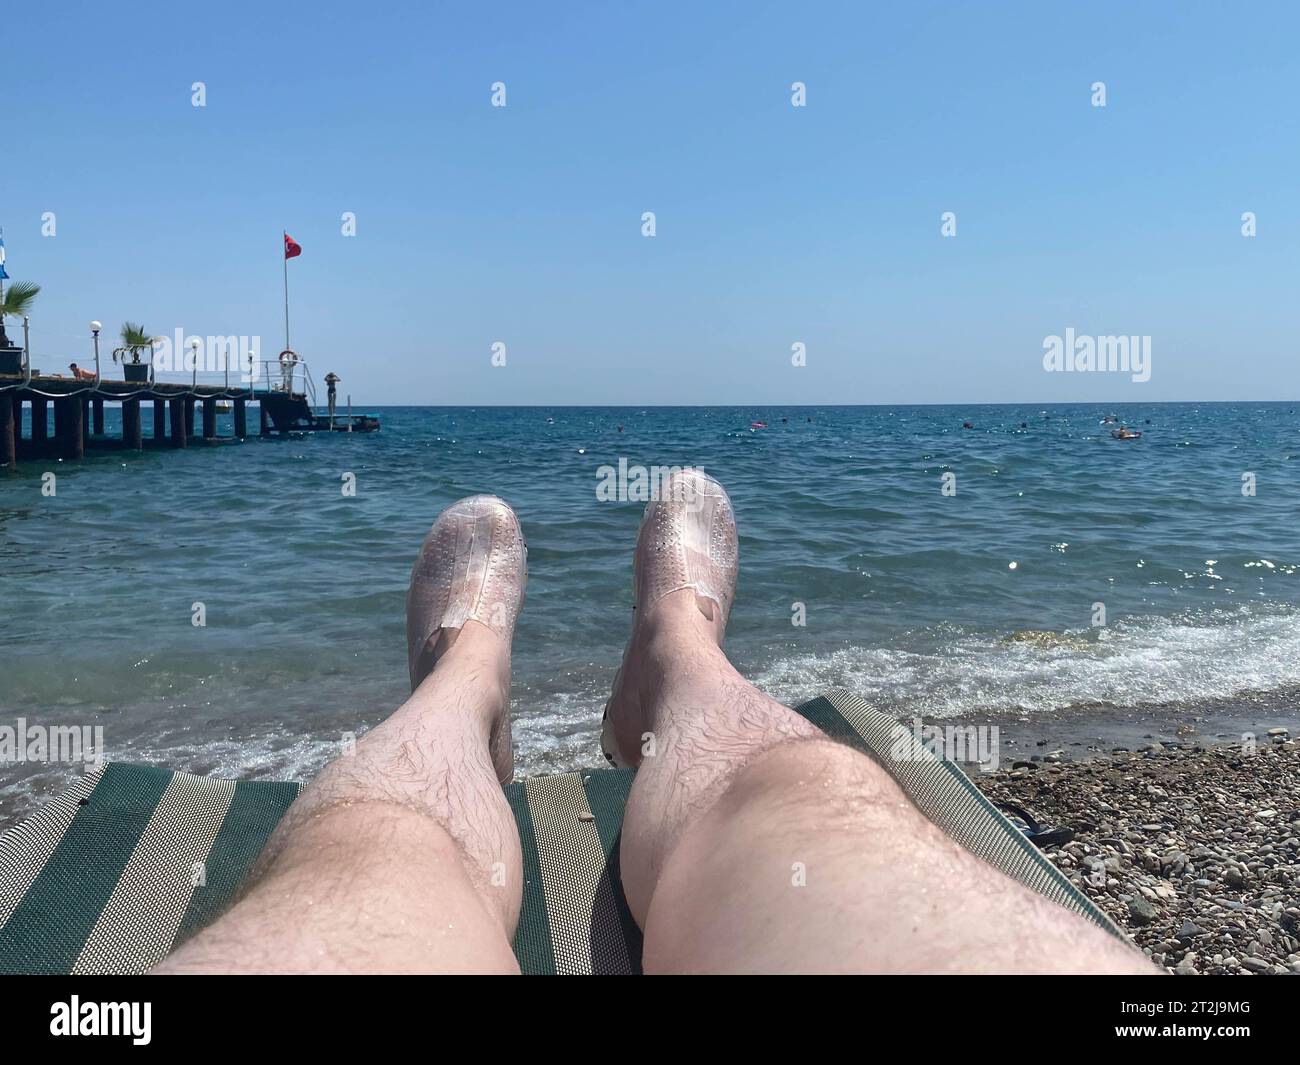 Junge Männer ruhen sich auf einer Strandliege in der Nähe des Schwimmbades aus, bei Sonnenuntergang mit blauem Wasser. Sommerurlaub. Männliche Beine liegen auf einer Sonnenbank am Meer. Stockfoto